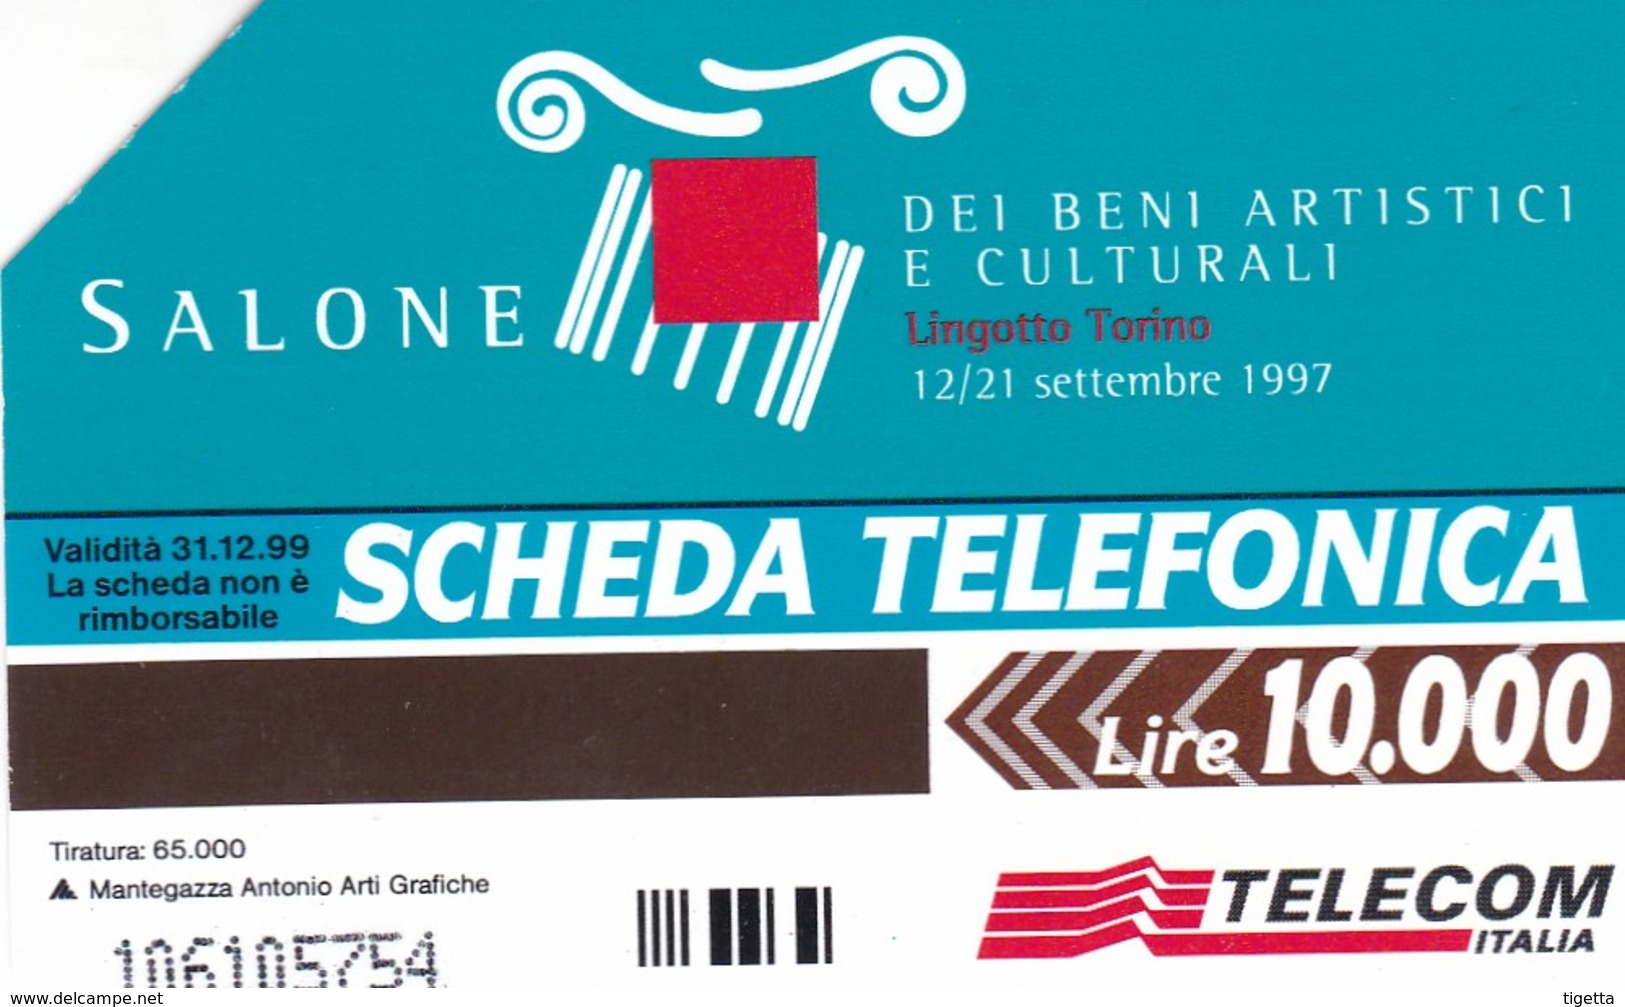 SCHEDA TELEFONICA  SALONE DEI BENI ARTISTICI E CULTURALI TORINO   SCADENZA 31/12/1999 USATA - Pubbliche Speciali O Commemorative